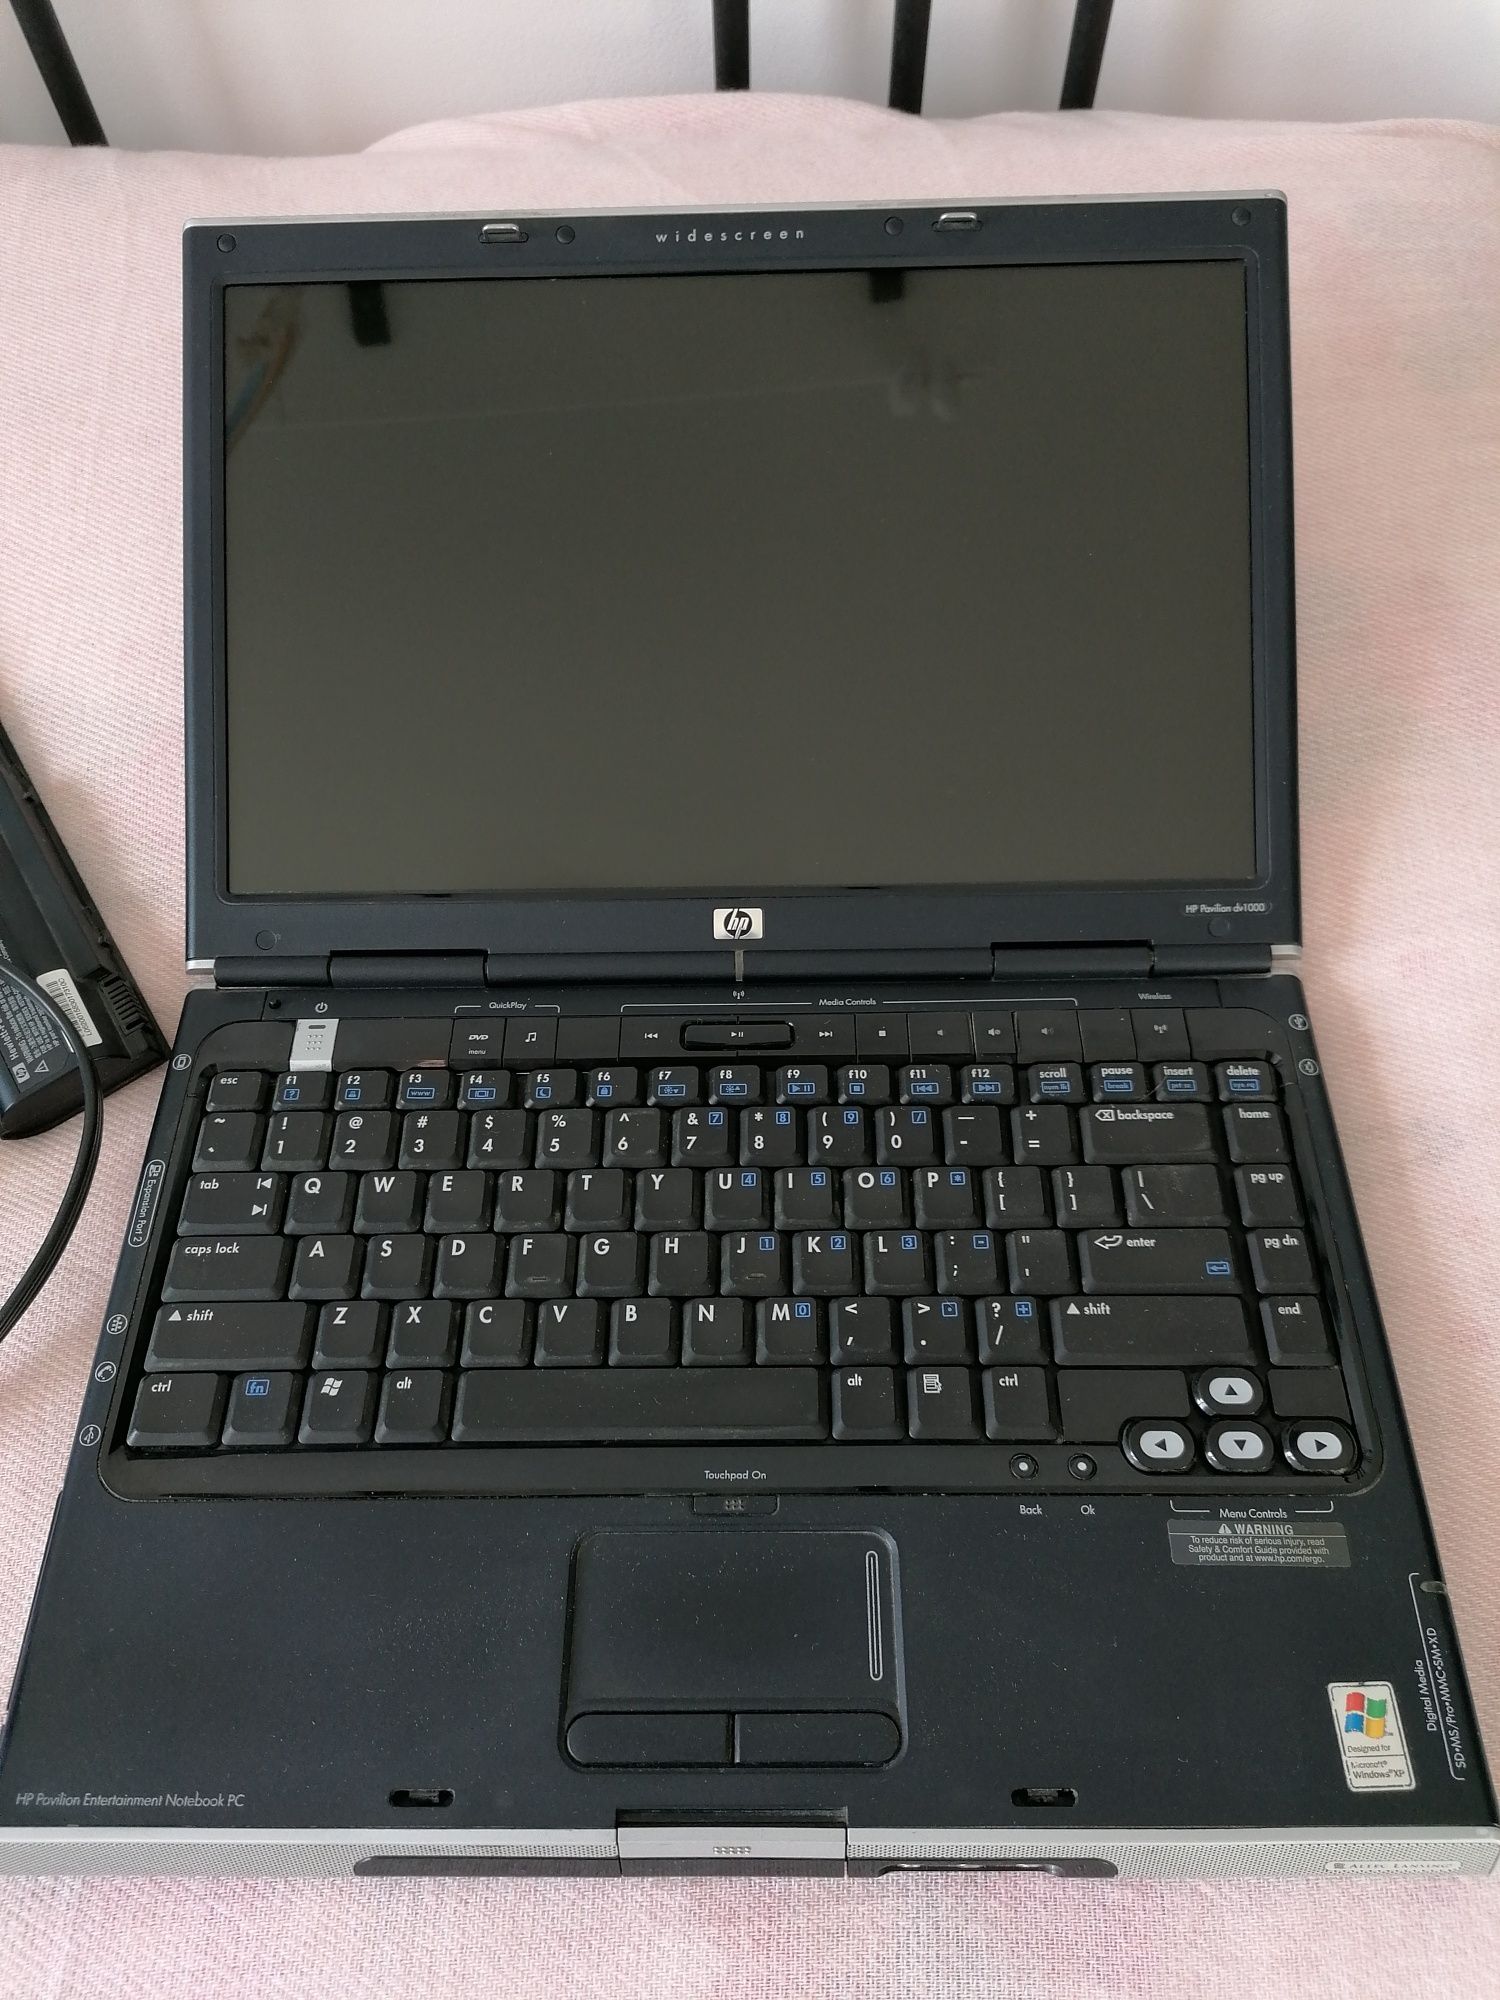 Laptop HP Pavilion dv1000 Pentium 2.0 GHz